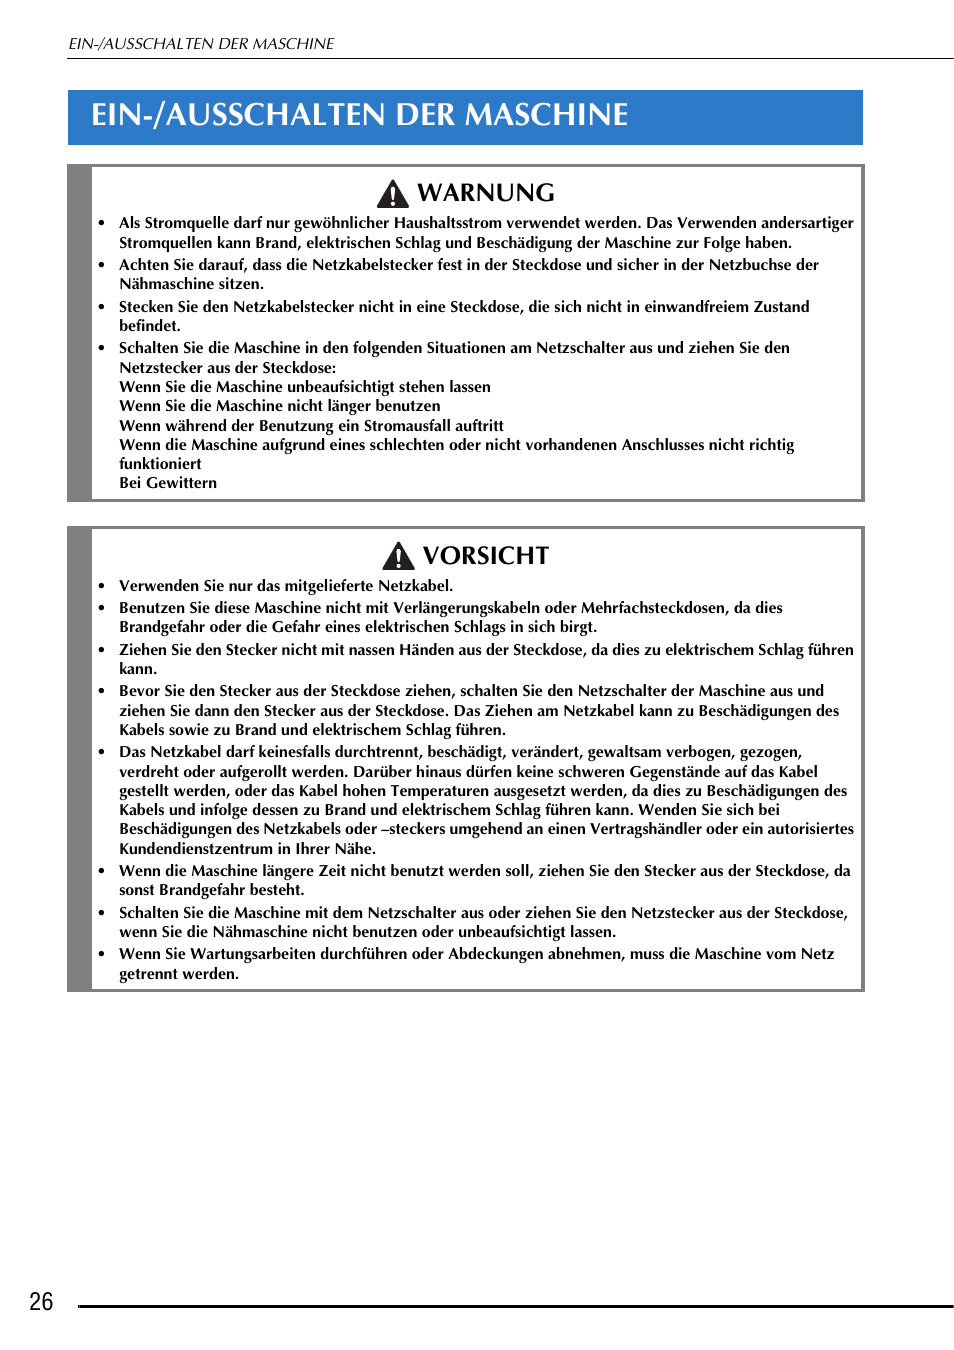 Ein-/ausschalten der maschine, Warnung, Vorsicht | Brother Innov-is Ie Benutzerhandbuch | Seite 28 / 376